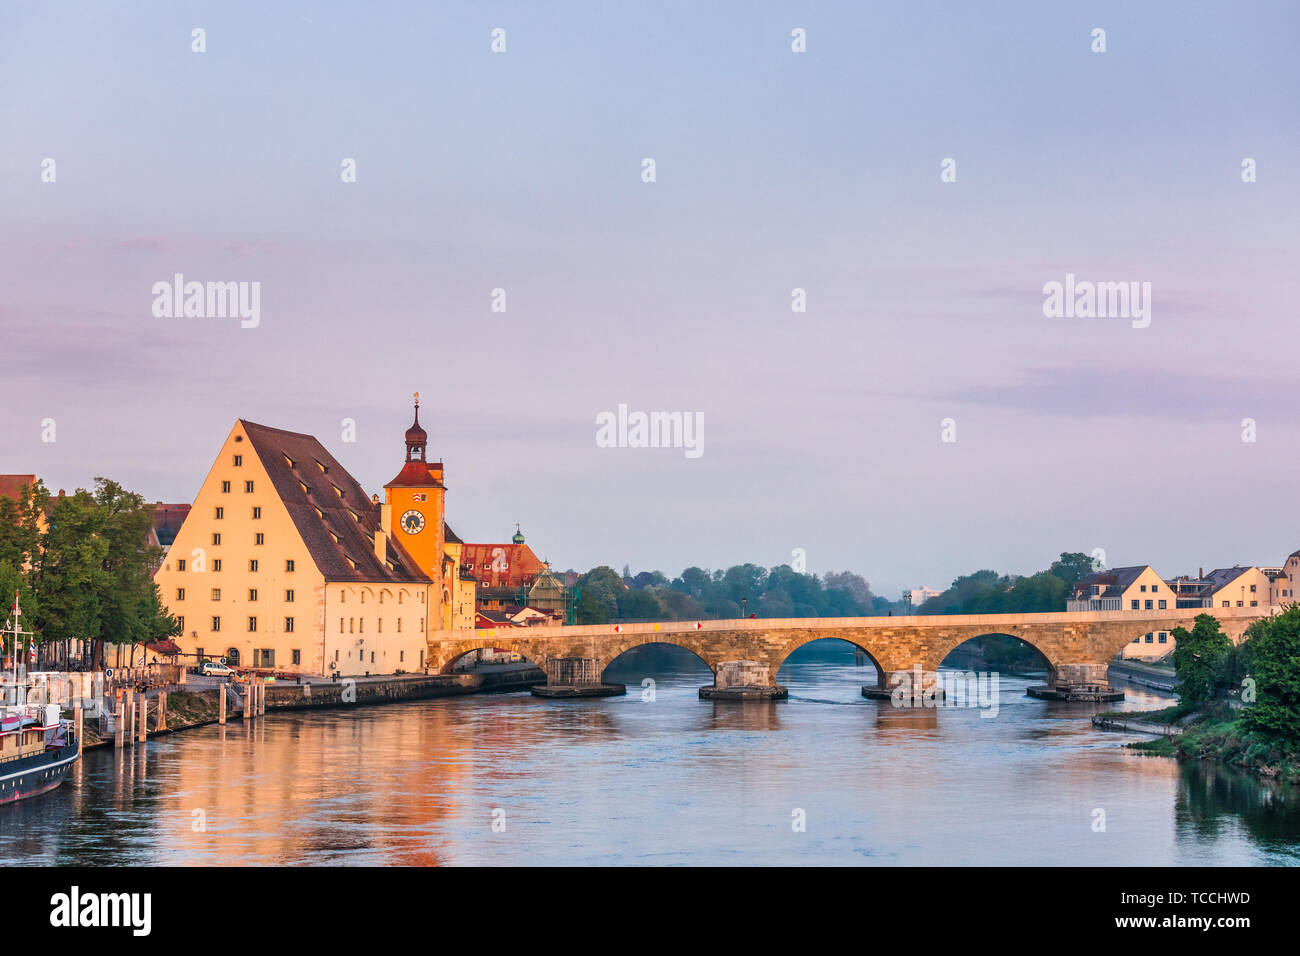 Regensburger Stadtbild mit der mittelalterlichen Brücke aus Stein (Steinerne Brücke) über die Donau, Bayern, Deutschland, Europa. Regensburg in der Bevölkerung Stockfoto